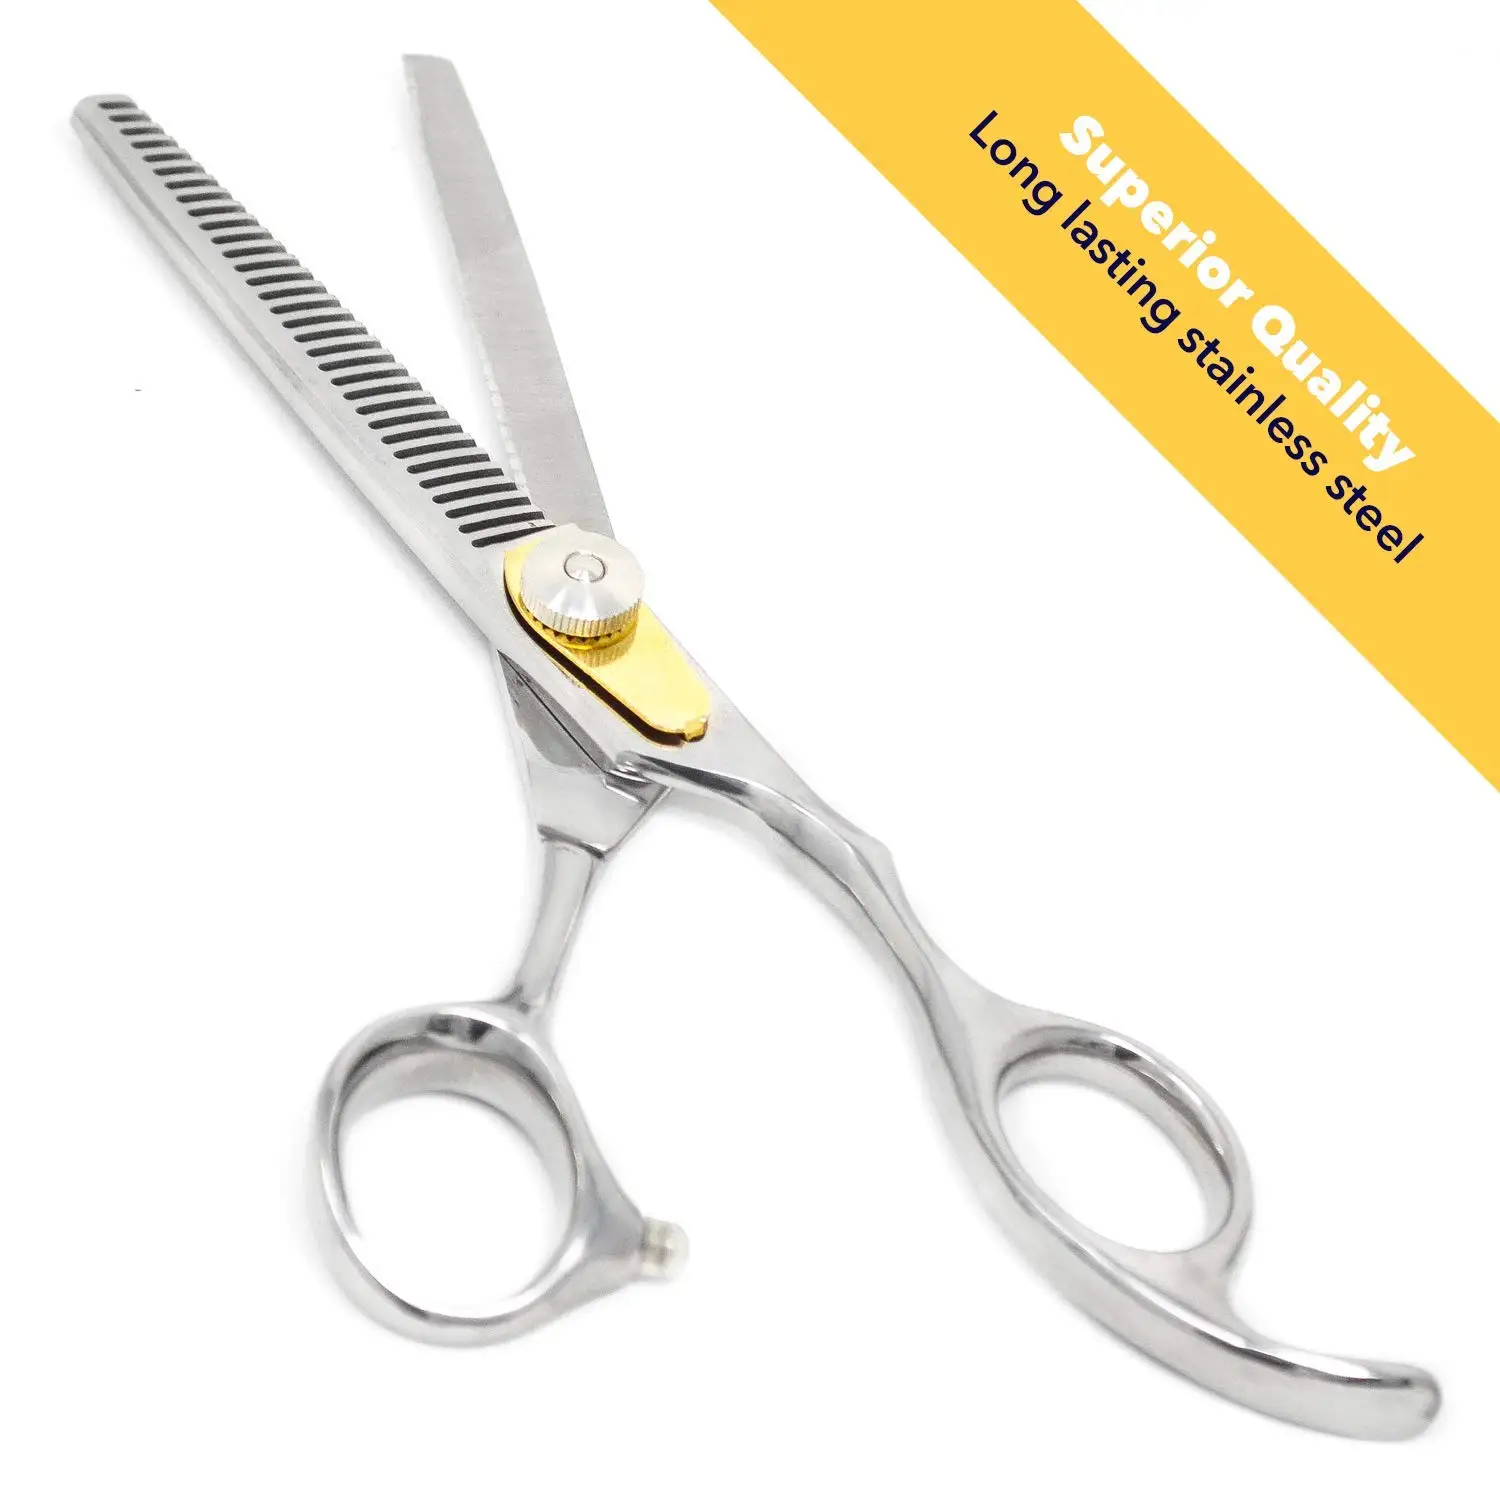 Professional Razor Edge Series Hair Cutting Scissors – Equinox